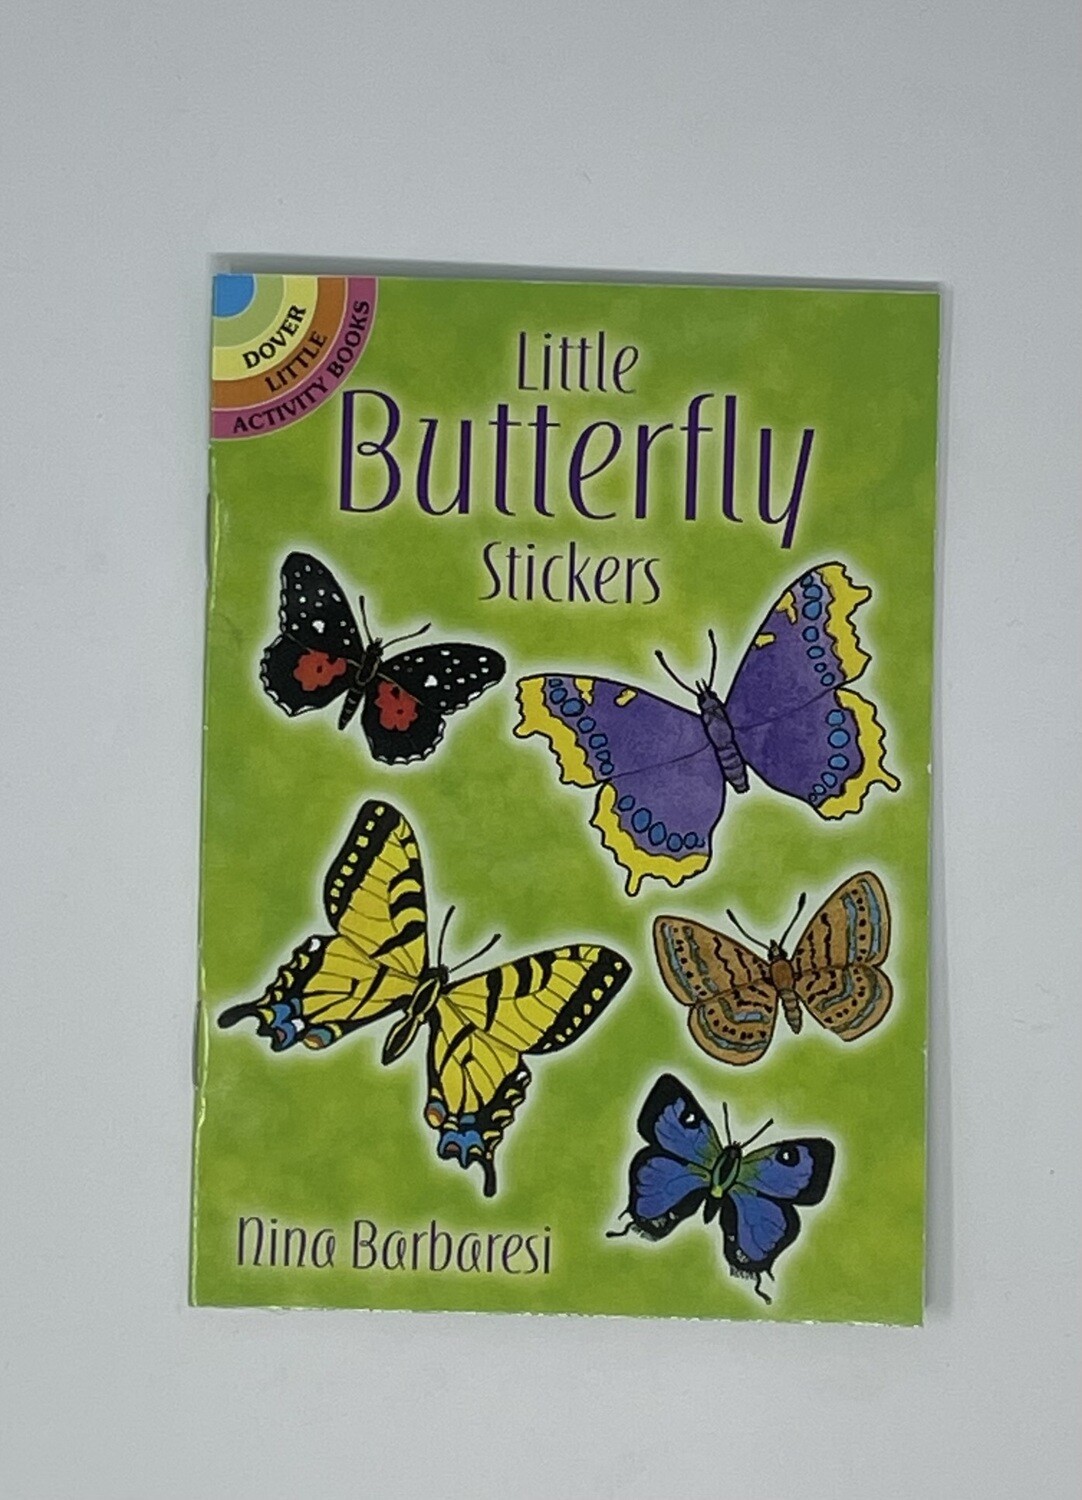 Little Butterfly Stickers